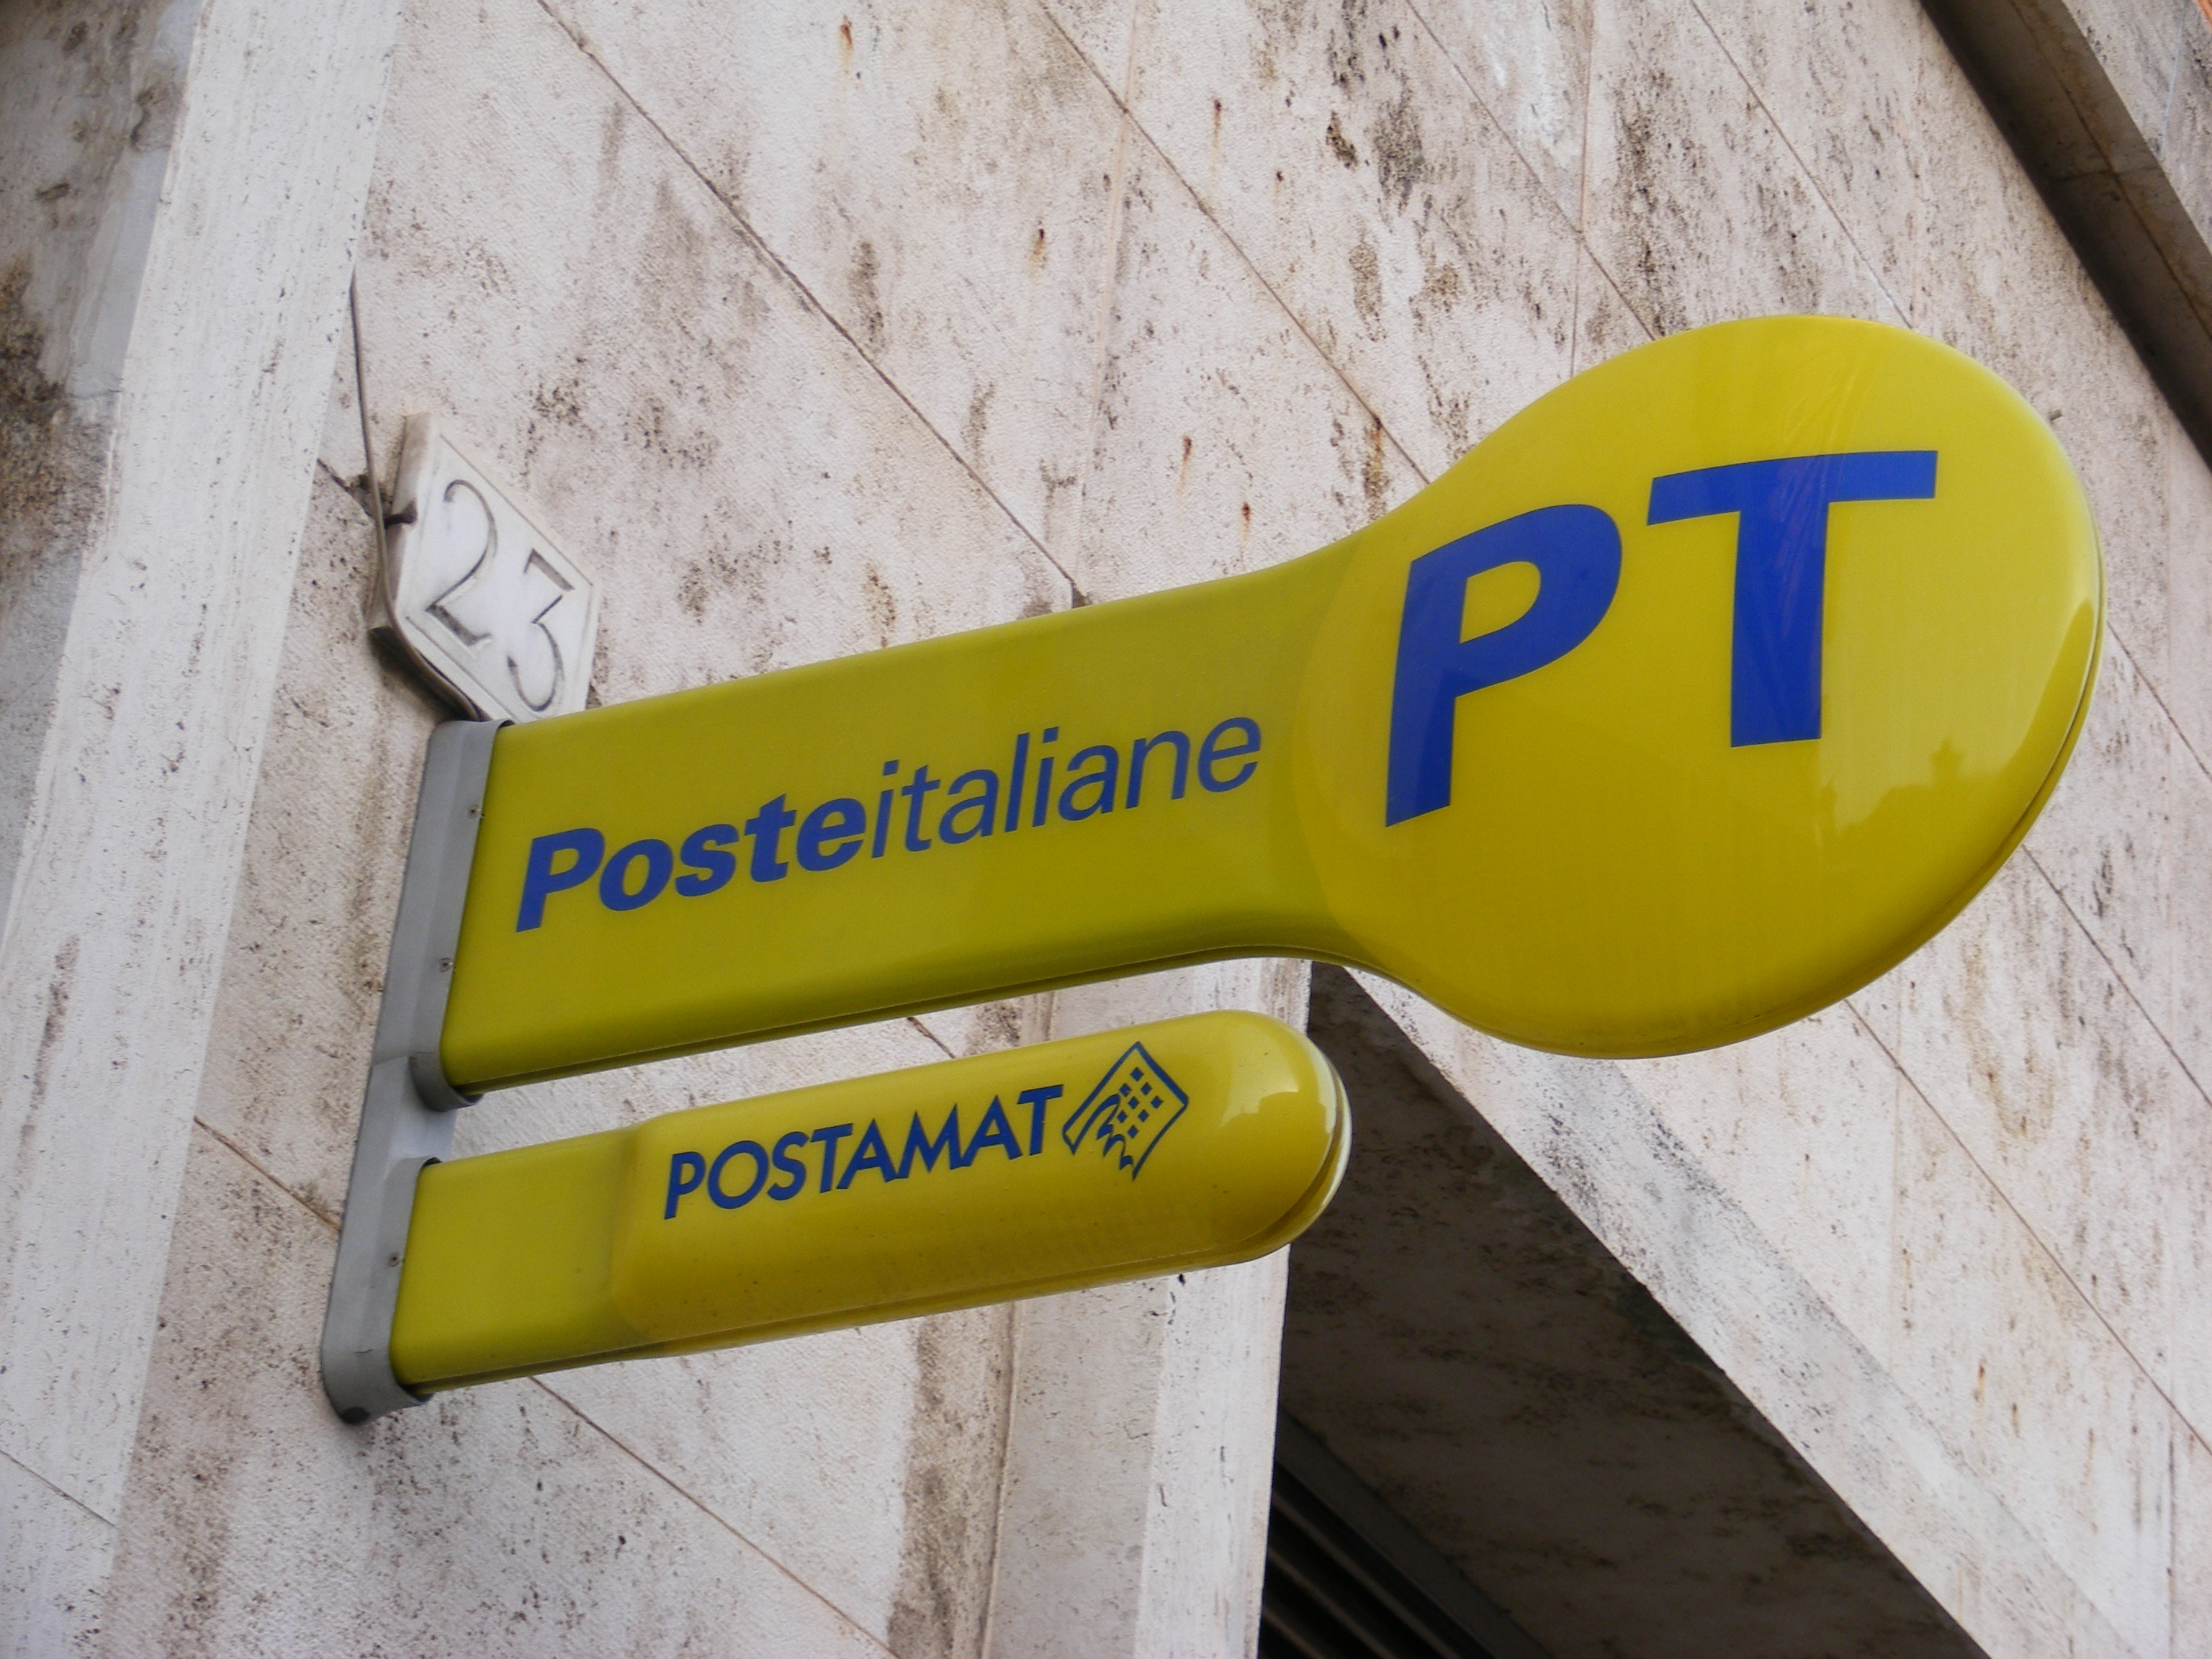  Lunedì 12 ottobre 2015 parte la privatizzazione di Poste Italiane